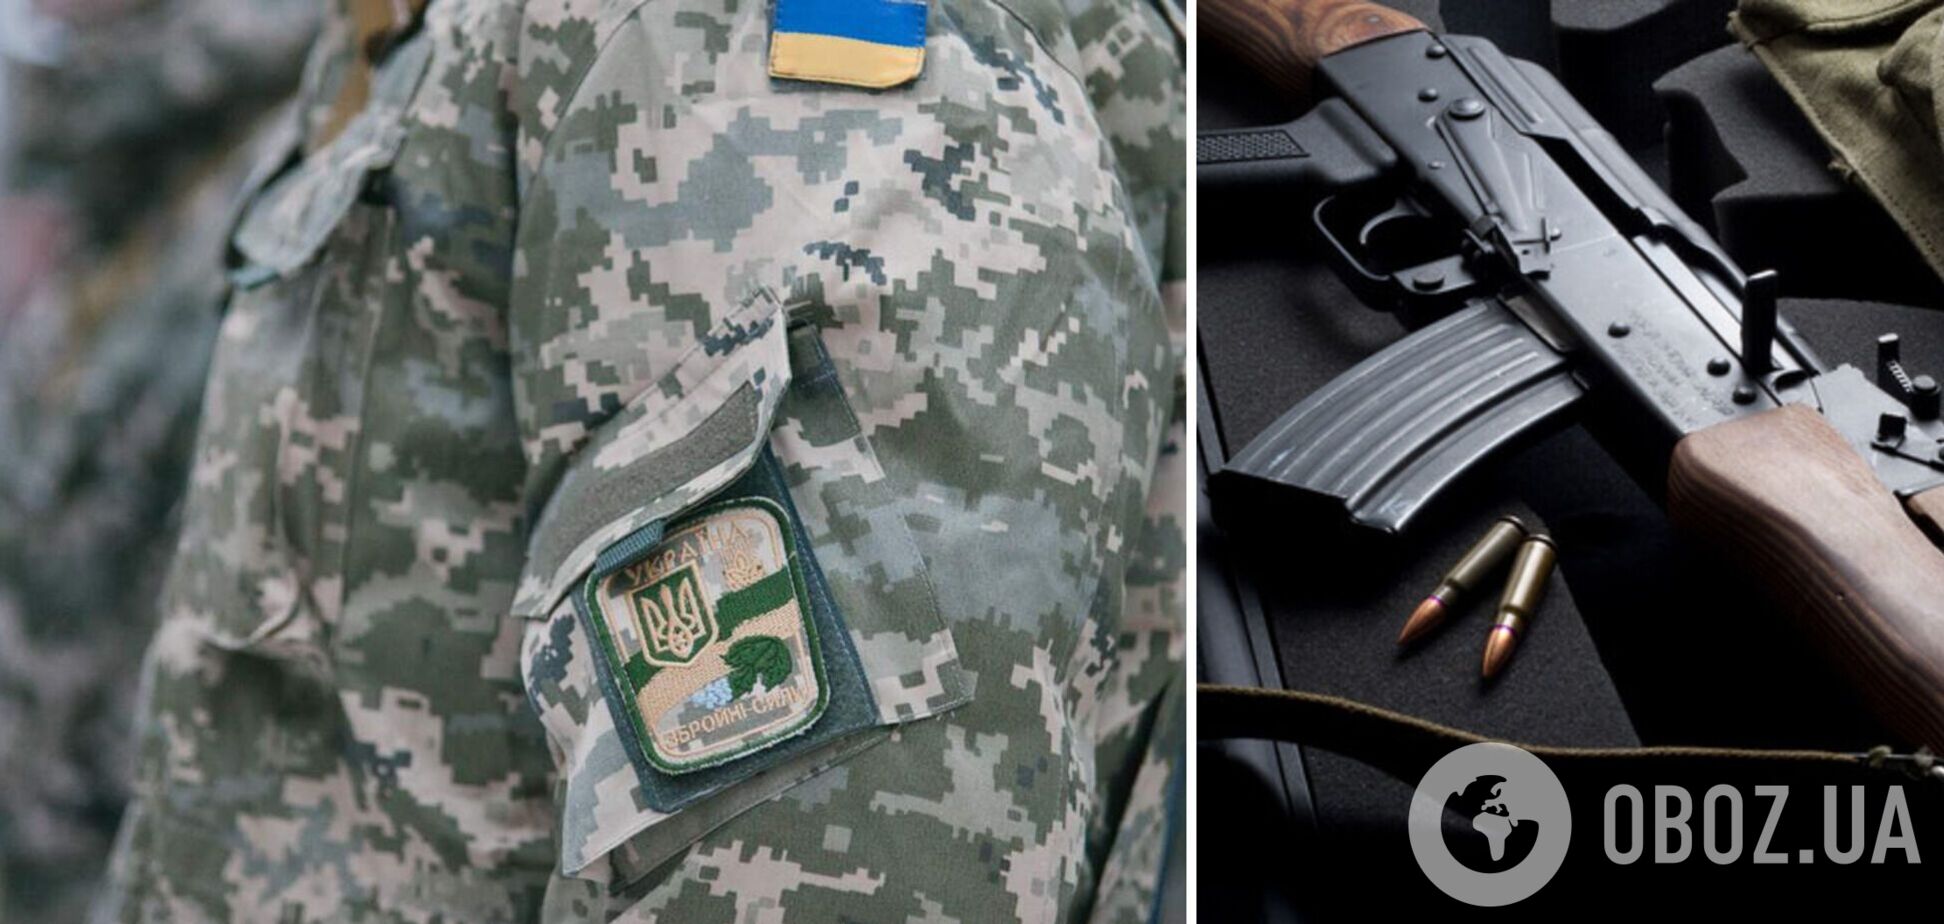 Силы теробороны по всей Украине получат оружие: представитель Зеленского озвучил сроки